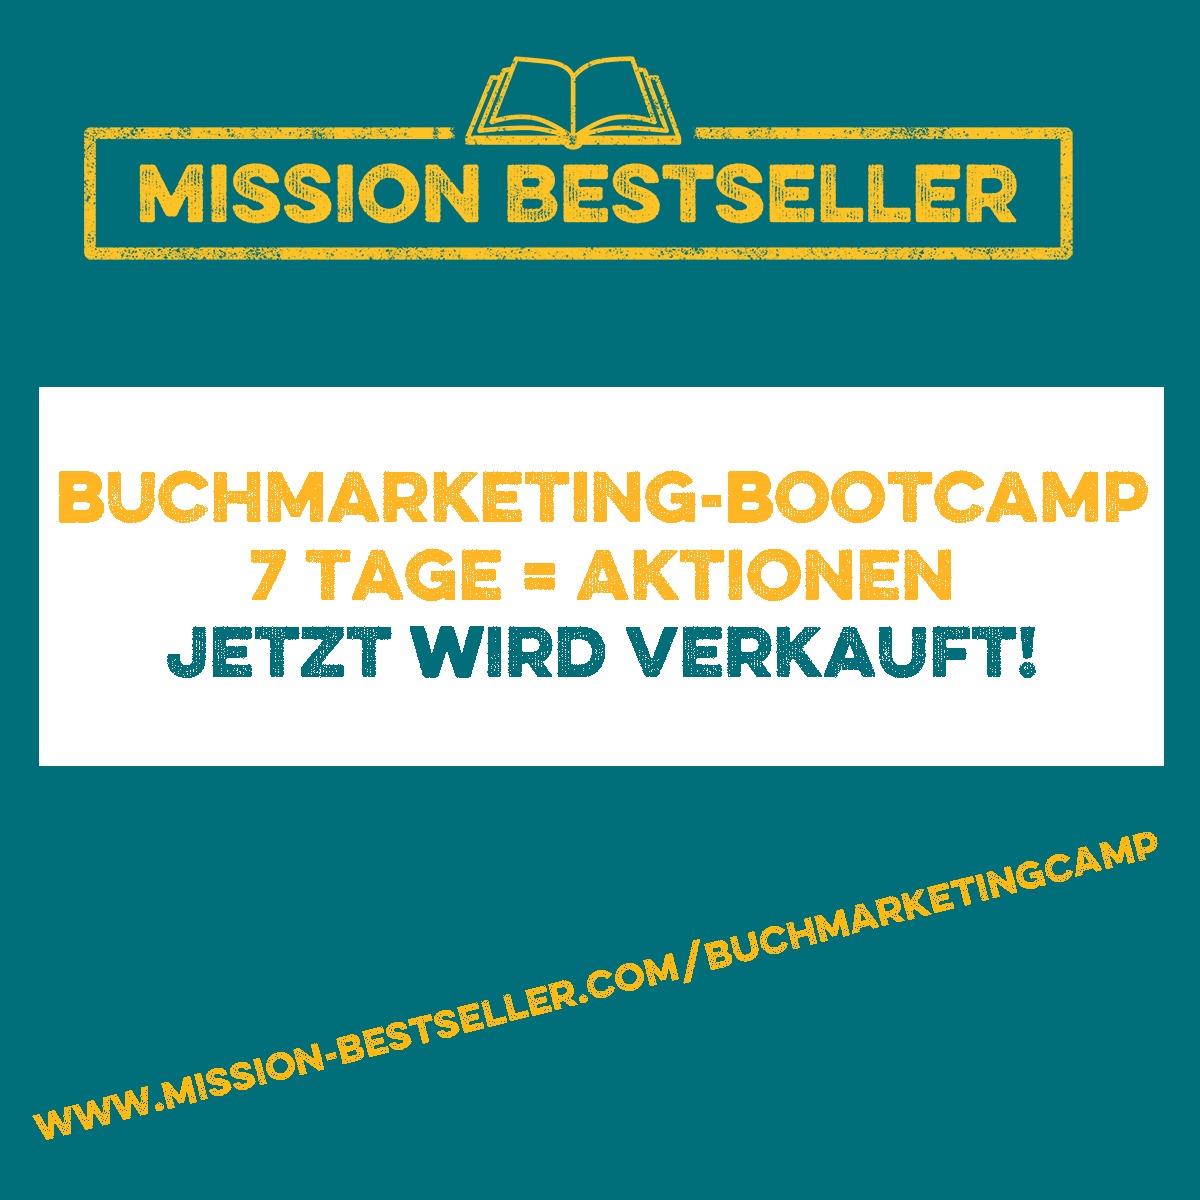 Mission Bestseller online Buchmarketing-Bootcamp 7 Tage = 7 Aktionen - jetzt wird verkauft!